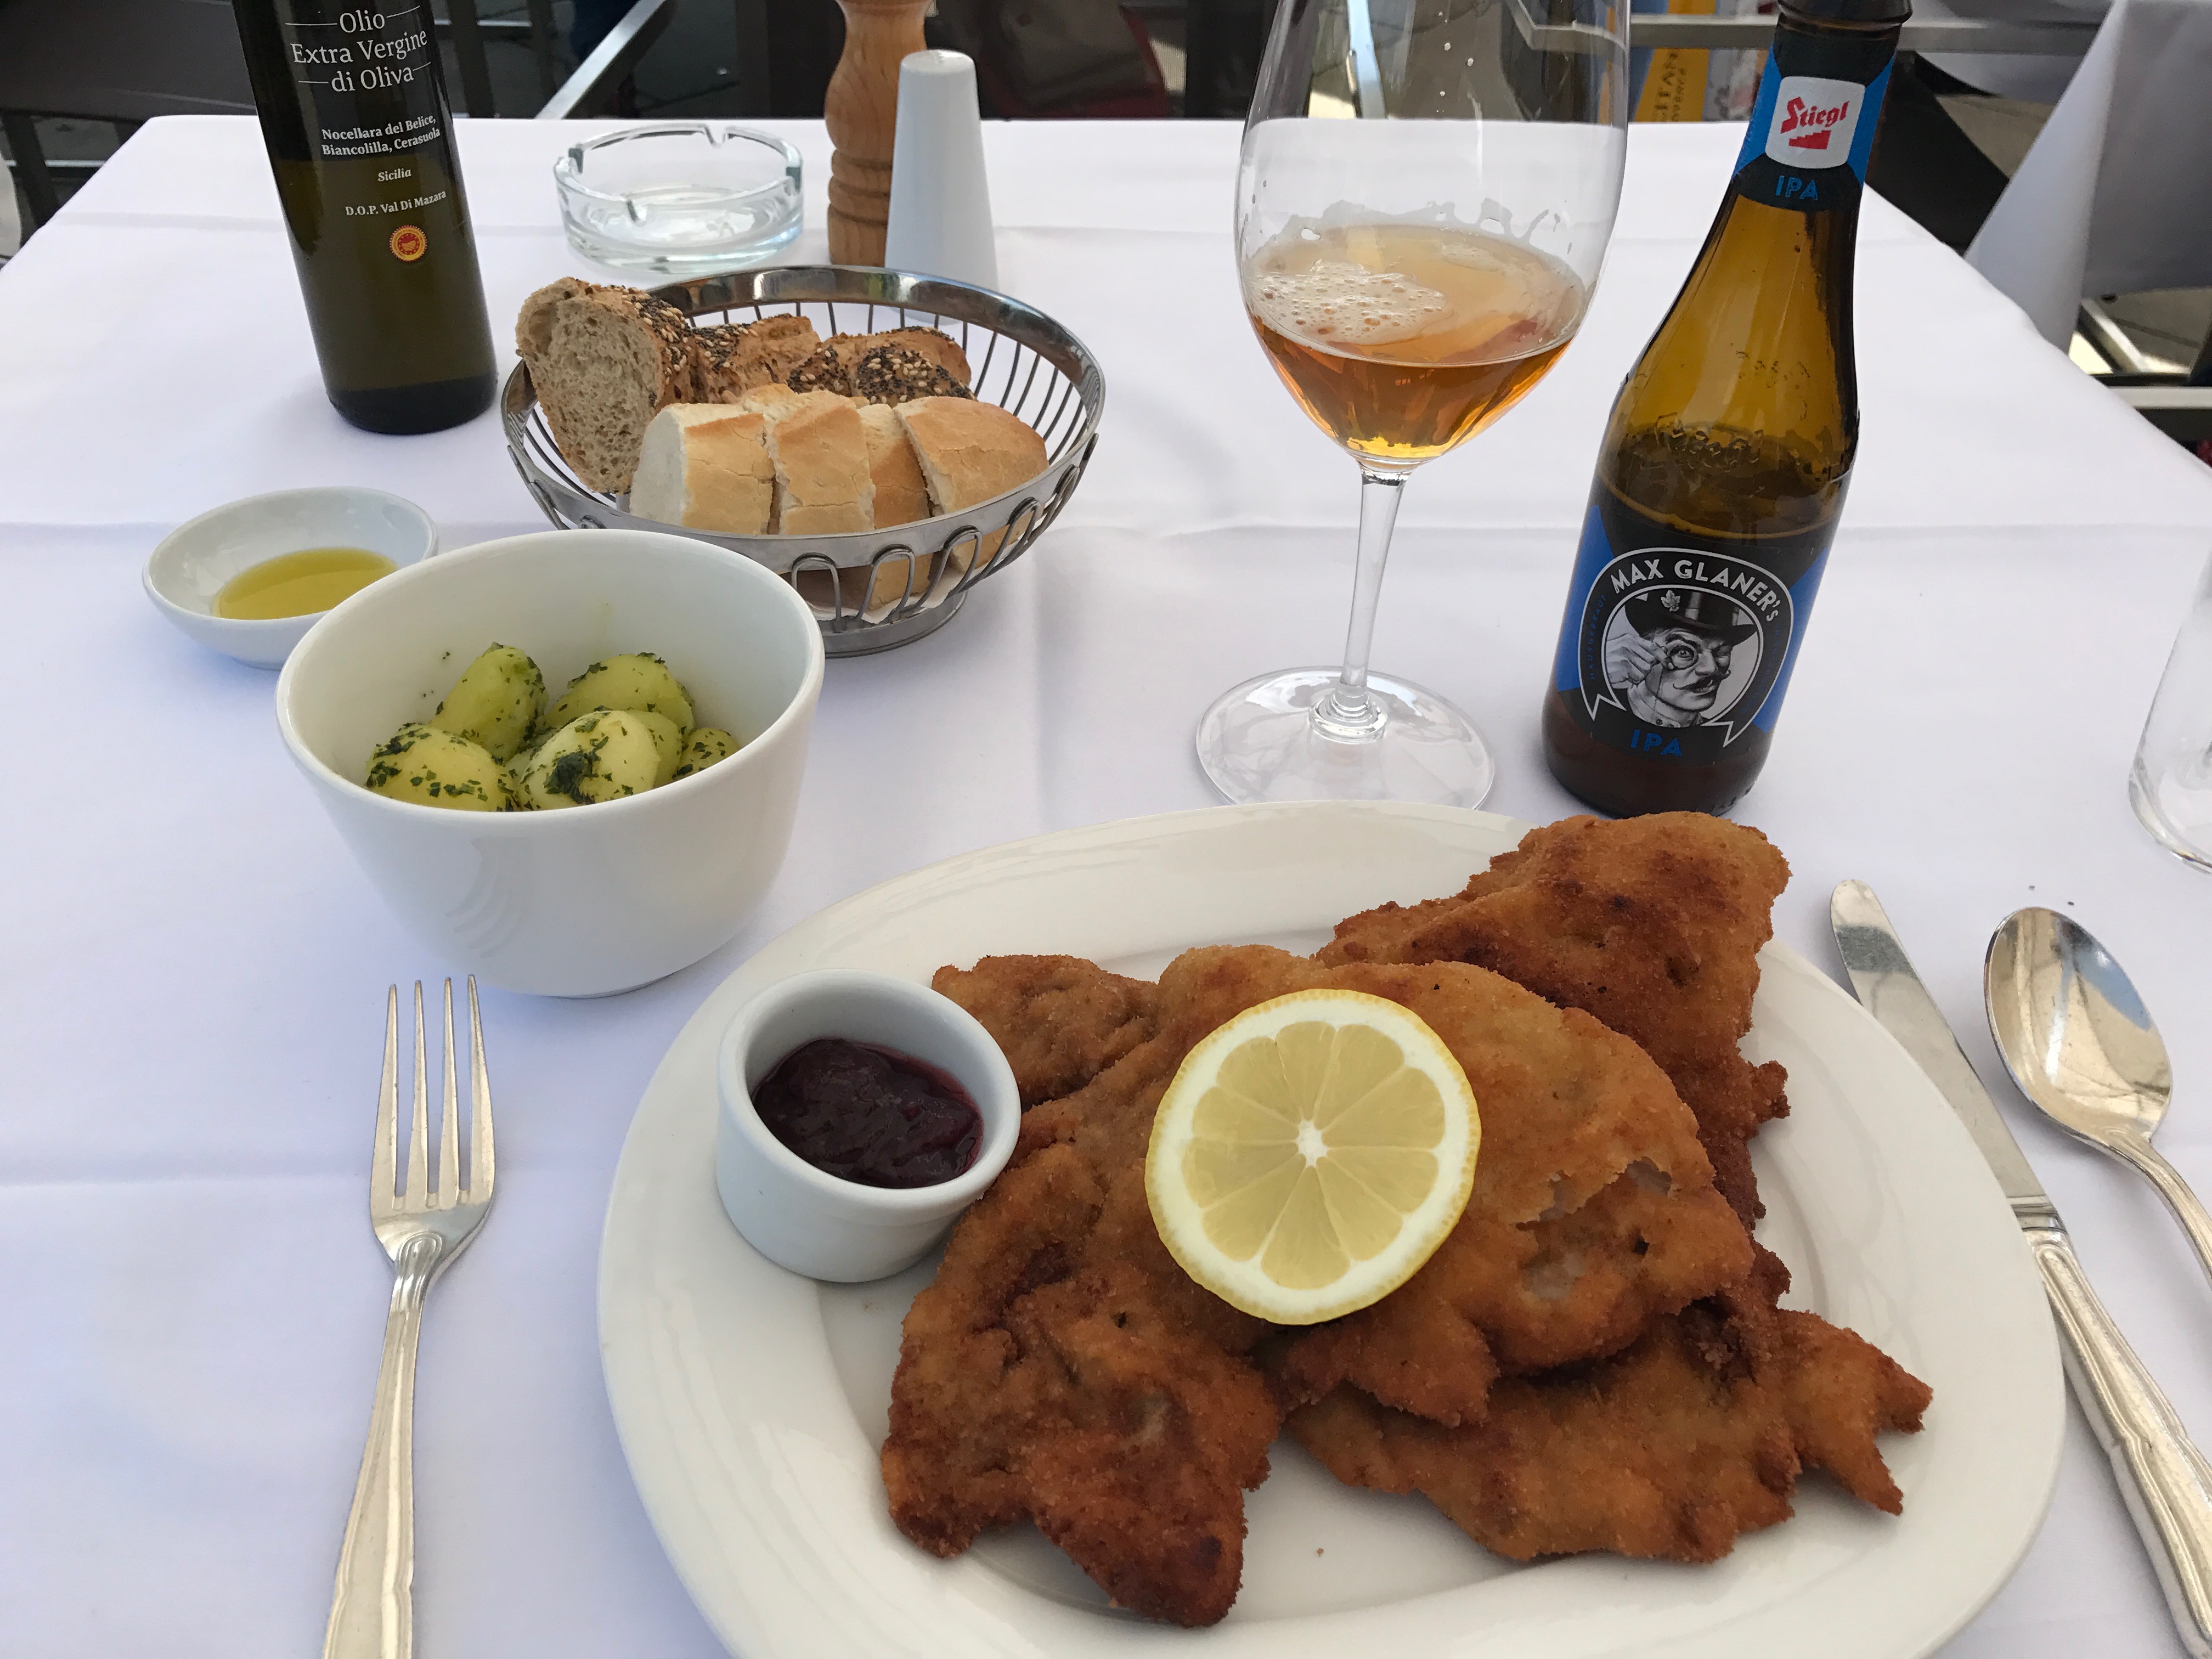 Clássico prato da região, o Schnitzel está harmonizado com uma India Pale Ale produzida na Áustria - Foto: Gleison Barreto/Cerveja e Gastronomia